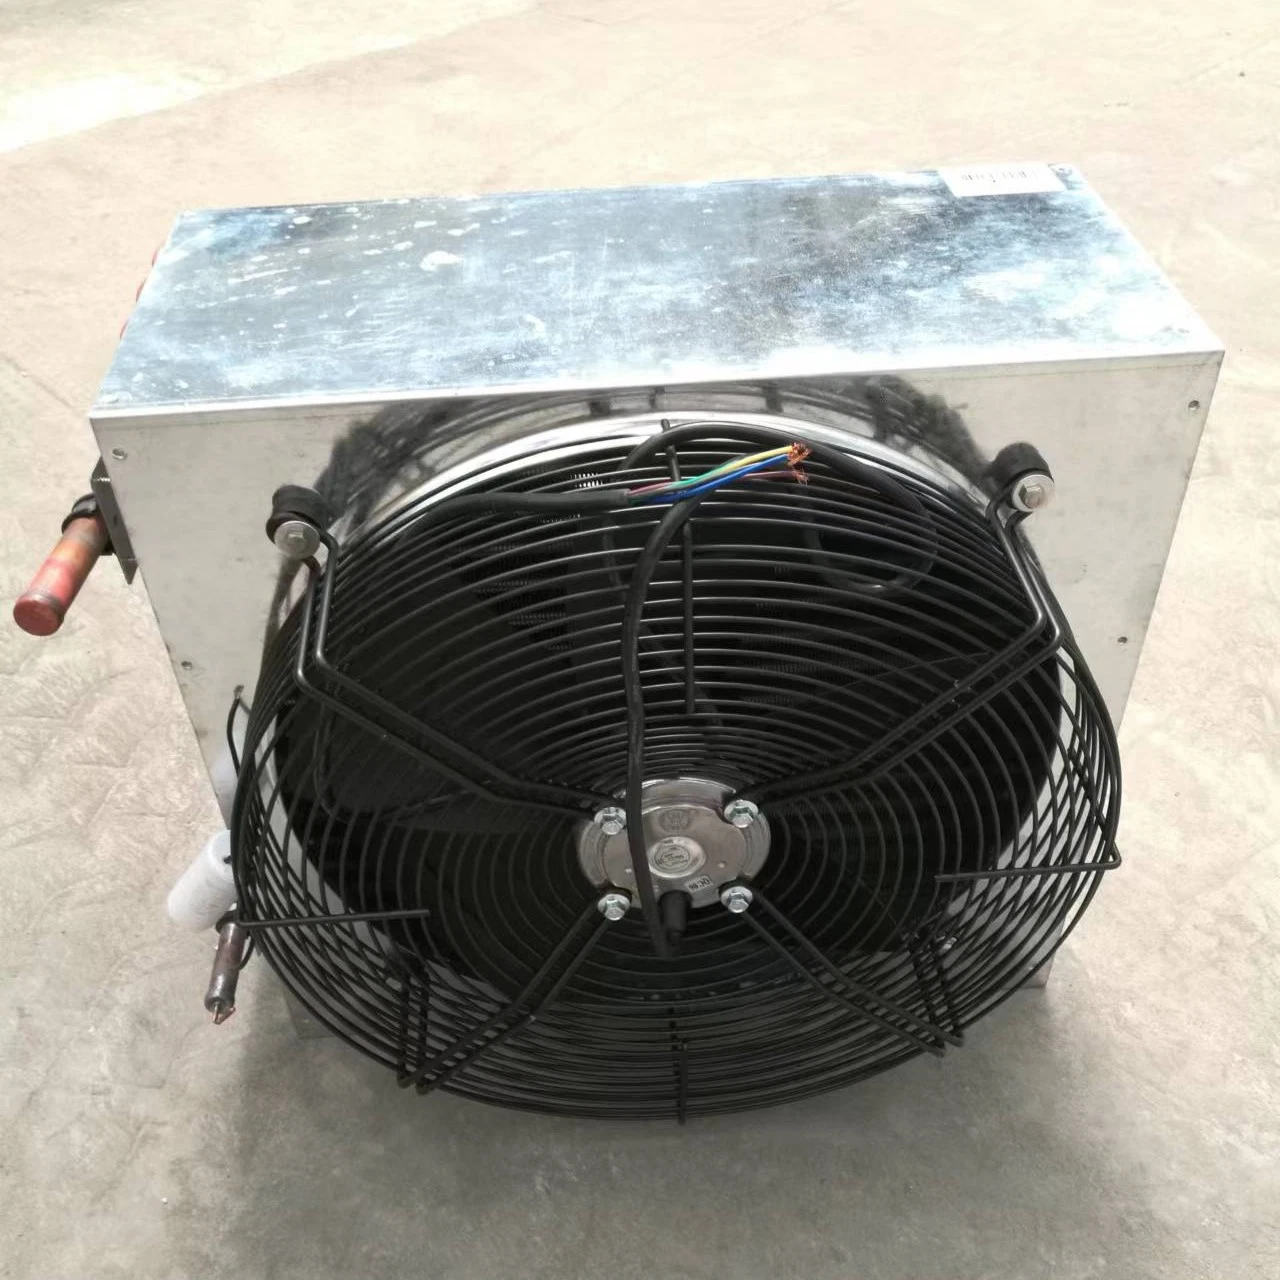 Condensador silencioso y eficiente Venta en caliente equipos de refrigeración